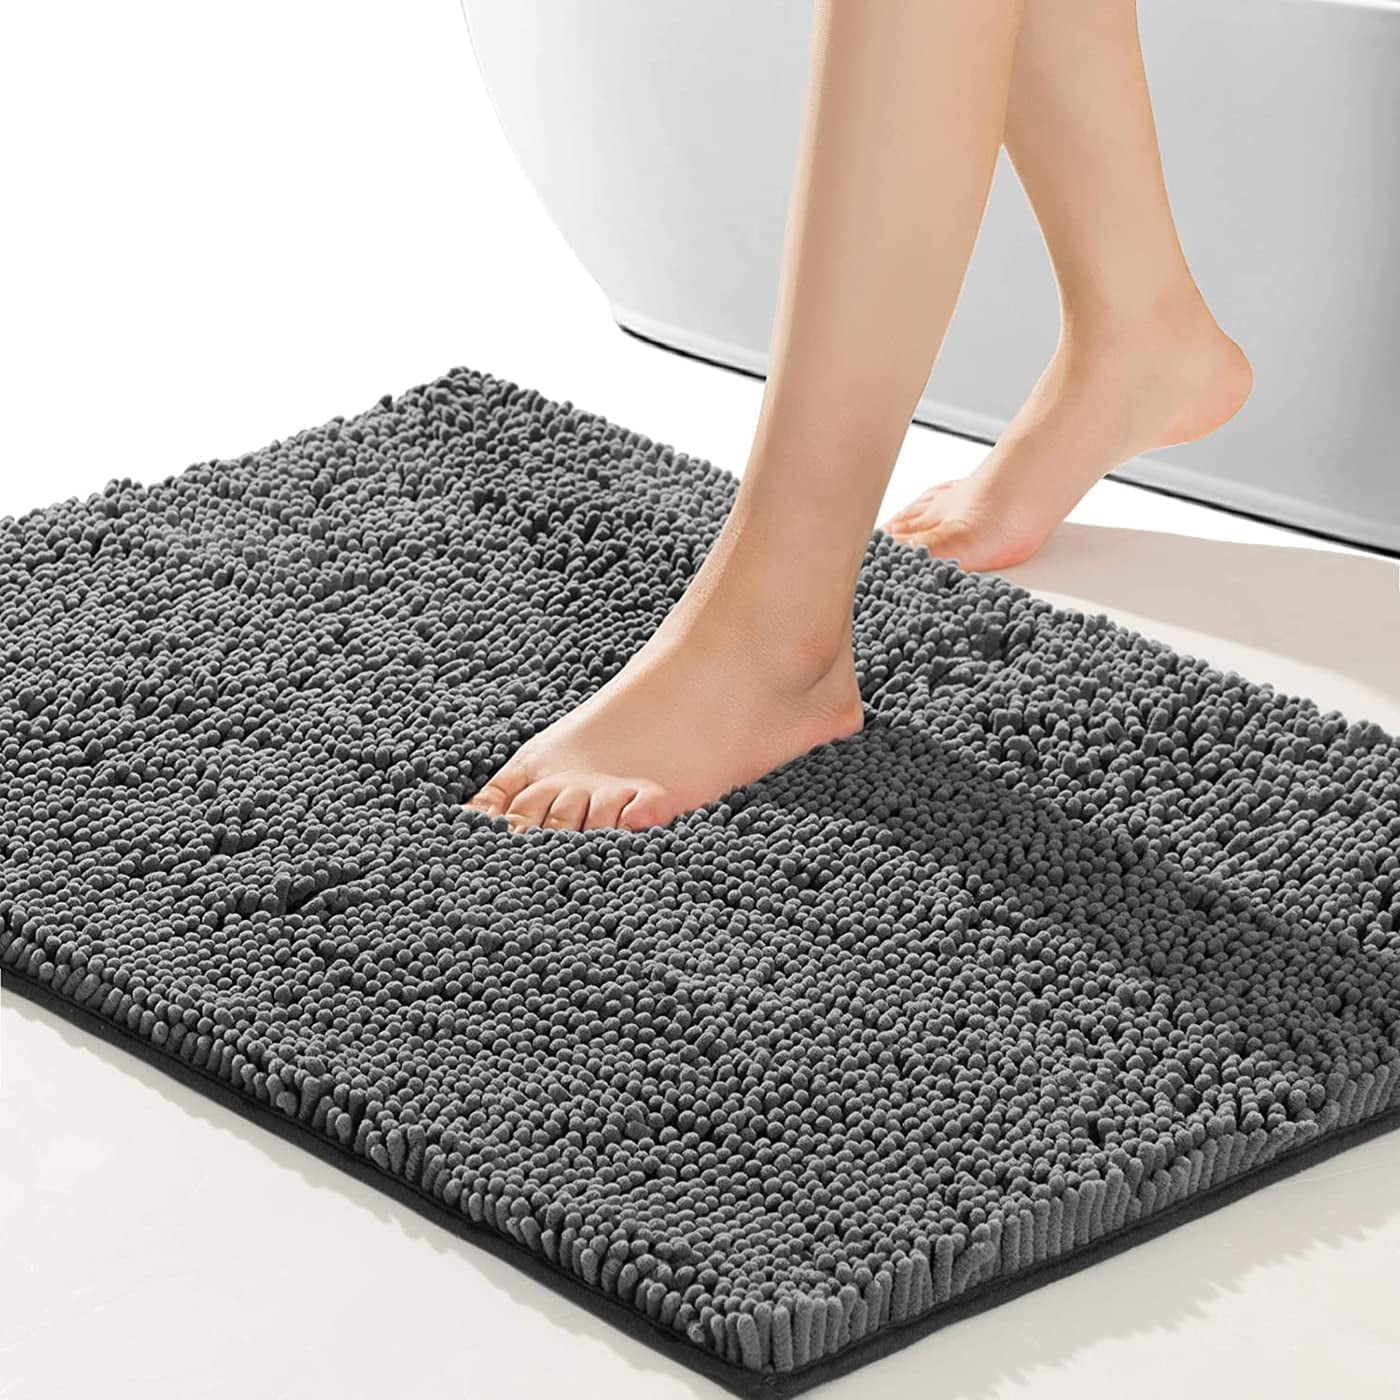 One 24 x 17 grey bathroom mat made of soft absorption felt and ultra thick  PU fiber blanket on a quick dry rubber backing. Bathroom mat, shower room  mat, running bath mat